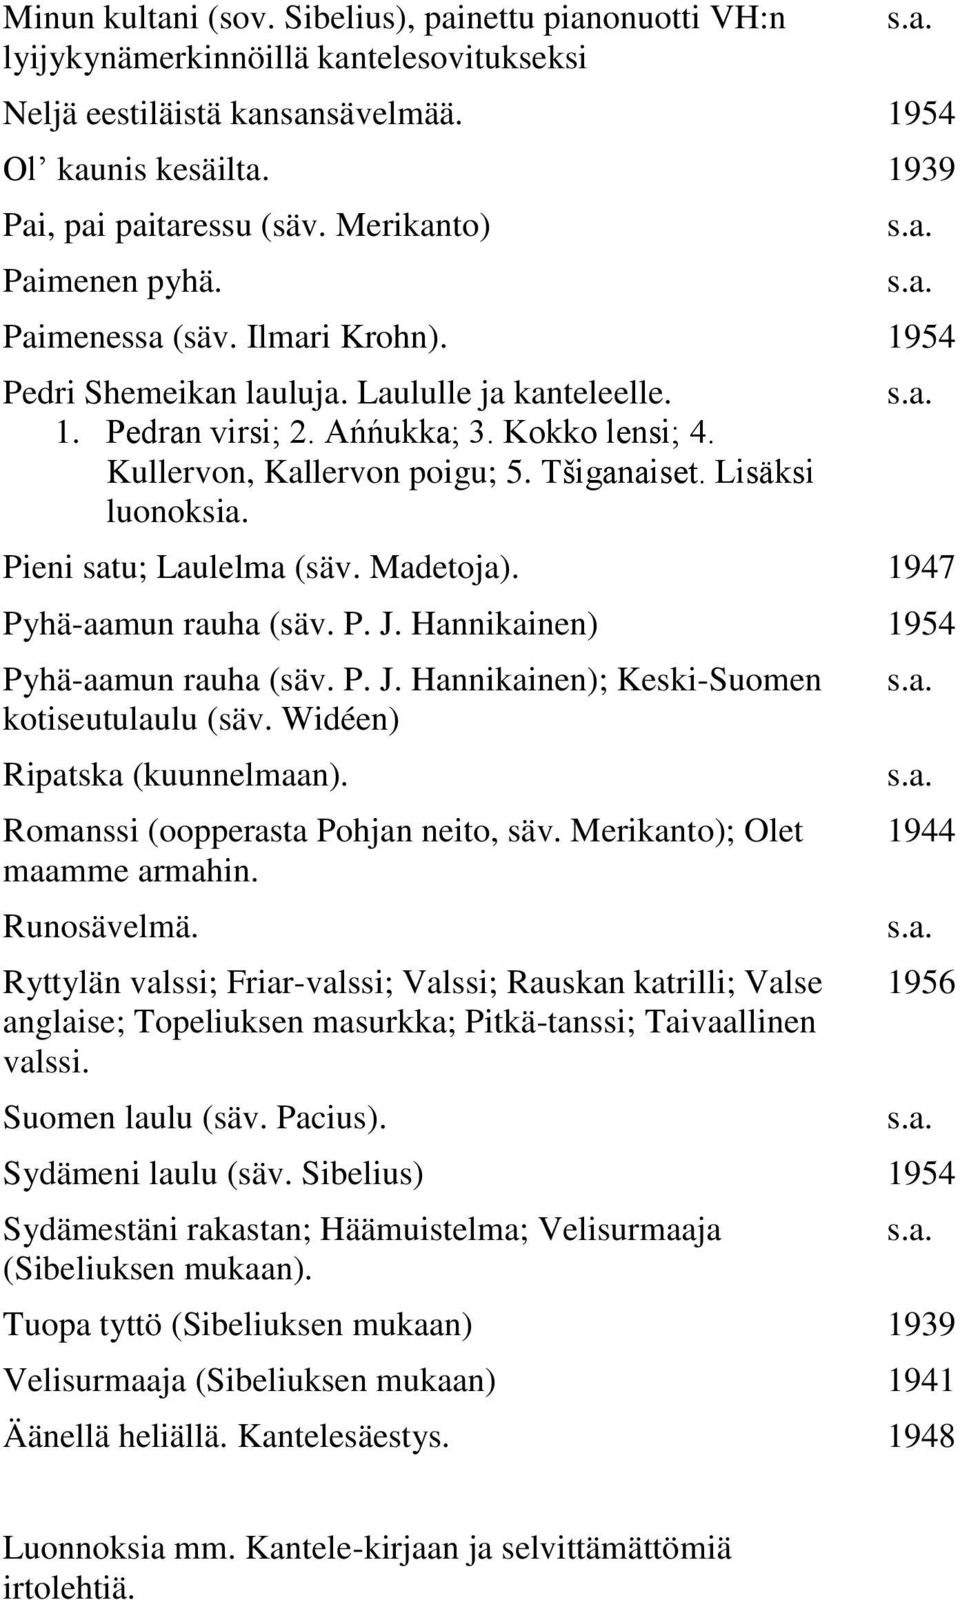 Tšiganaiset. Lisäksi luonoksia. Pieni satu; Laulelma (säv. Madetoja). 1947 Pyhä-aamun rauha (säv. P. J. Hannikainen) 1954 Pyhä-aamun rauha (säv. P. J. Hannikainen); Keski-Suomen kotiseutulaulu (säv.